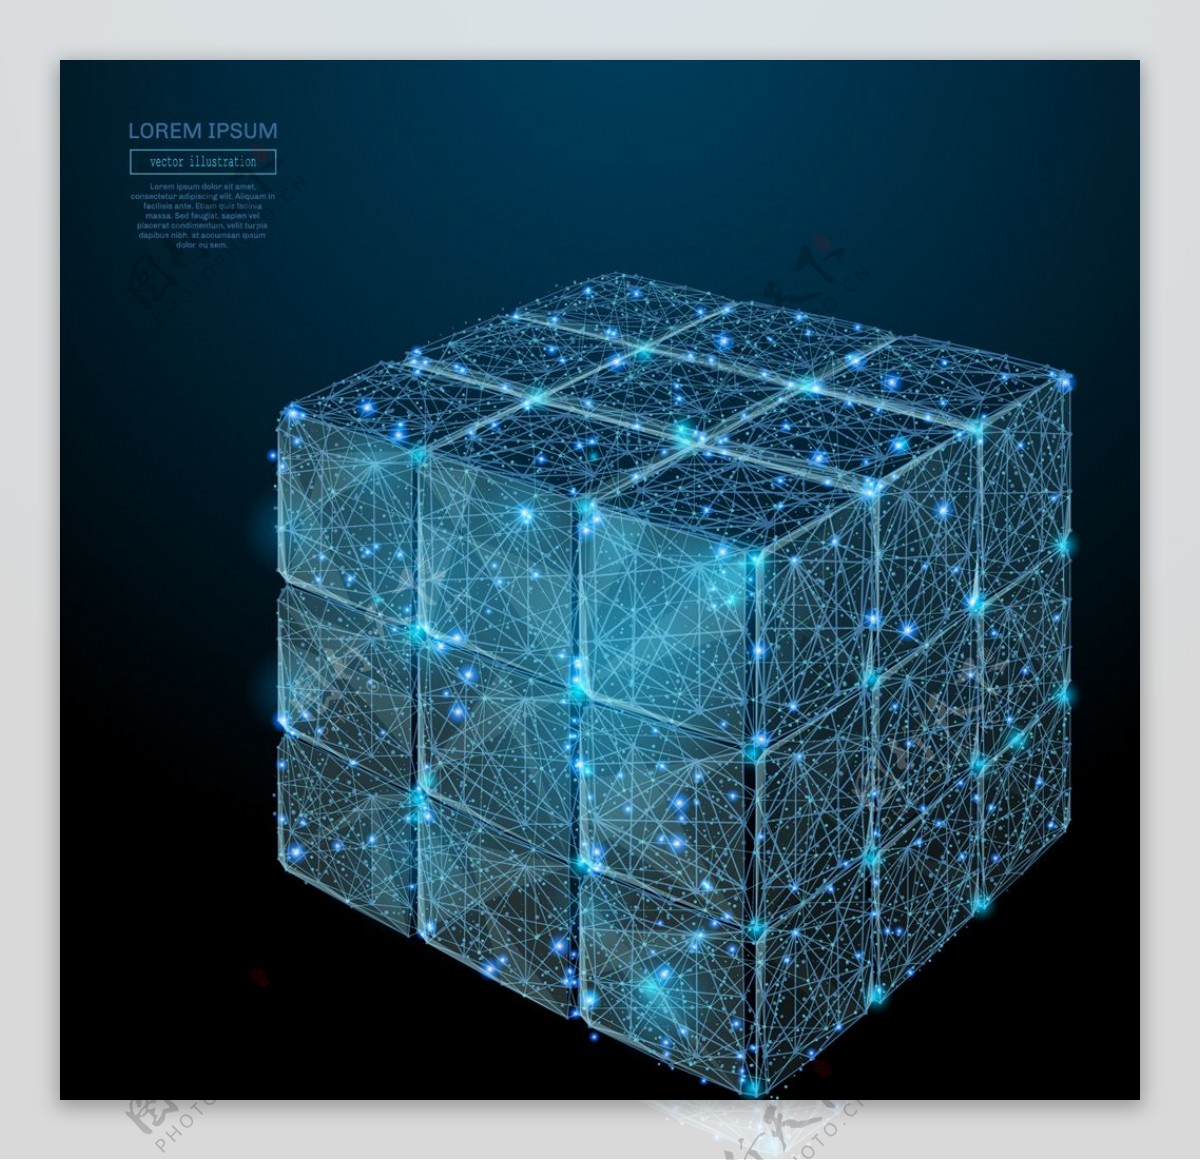 科技魔方立方体